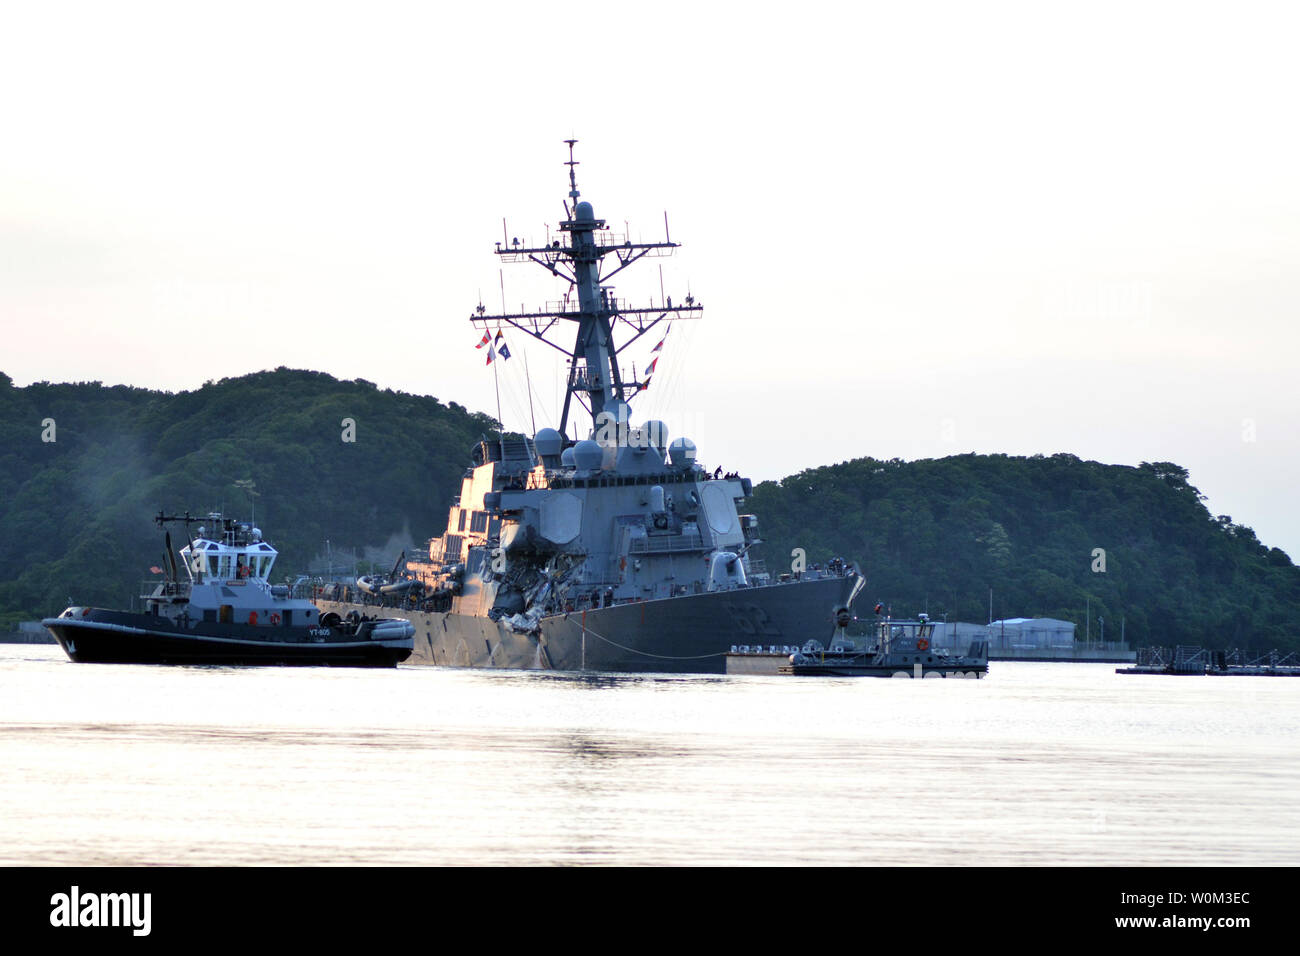 Il Arleigh Burke-class guidato-missile destroyer USS Fitzgerald (DDG 62) restituisce per le attività della flotta (FLEACT) Yokosuka il 17 giugno 2017, a seguito di una collisione con il cristallo ACX, Filippine una nave mercantile, durante il funzionamento a sud-ovest di Yokosuka, Giappone. Foto di MC1 Pietro Burghart/STATI UNITI Navy/UPI Foto Stock